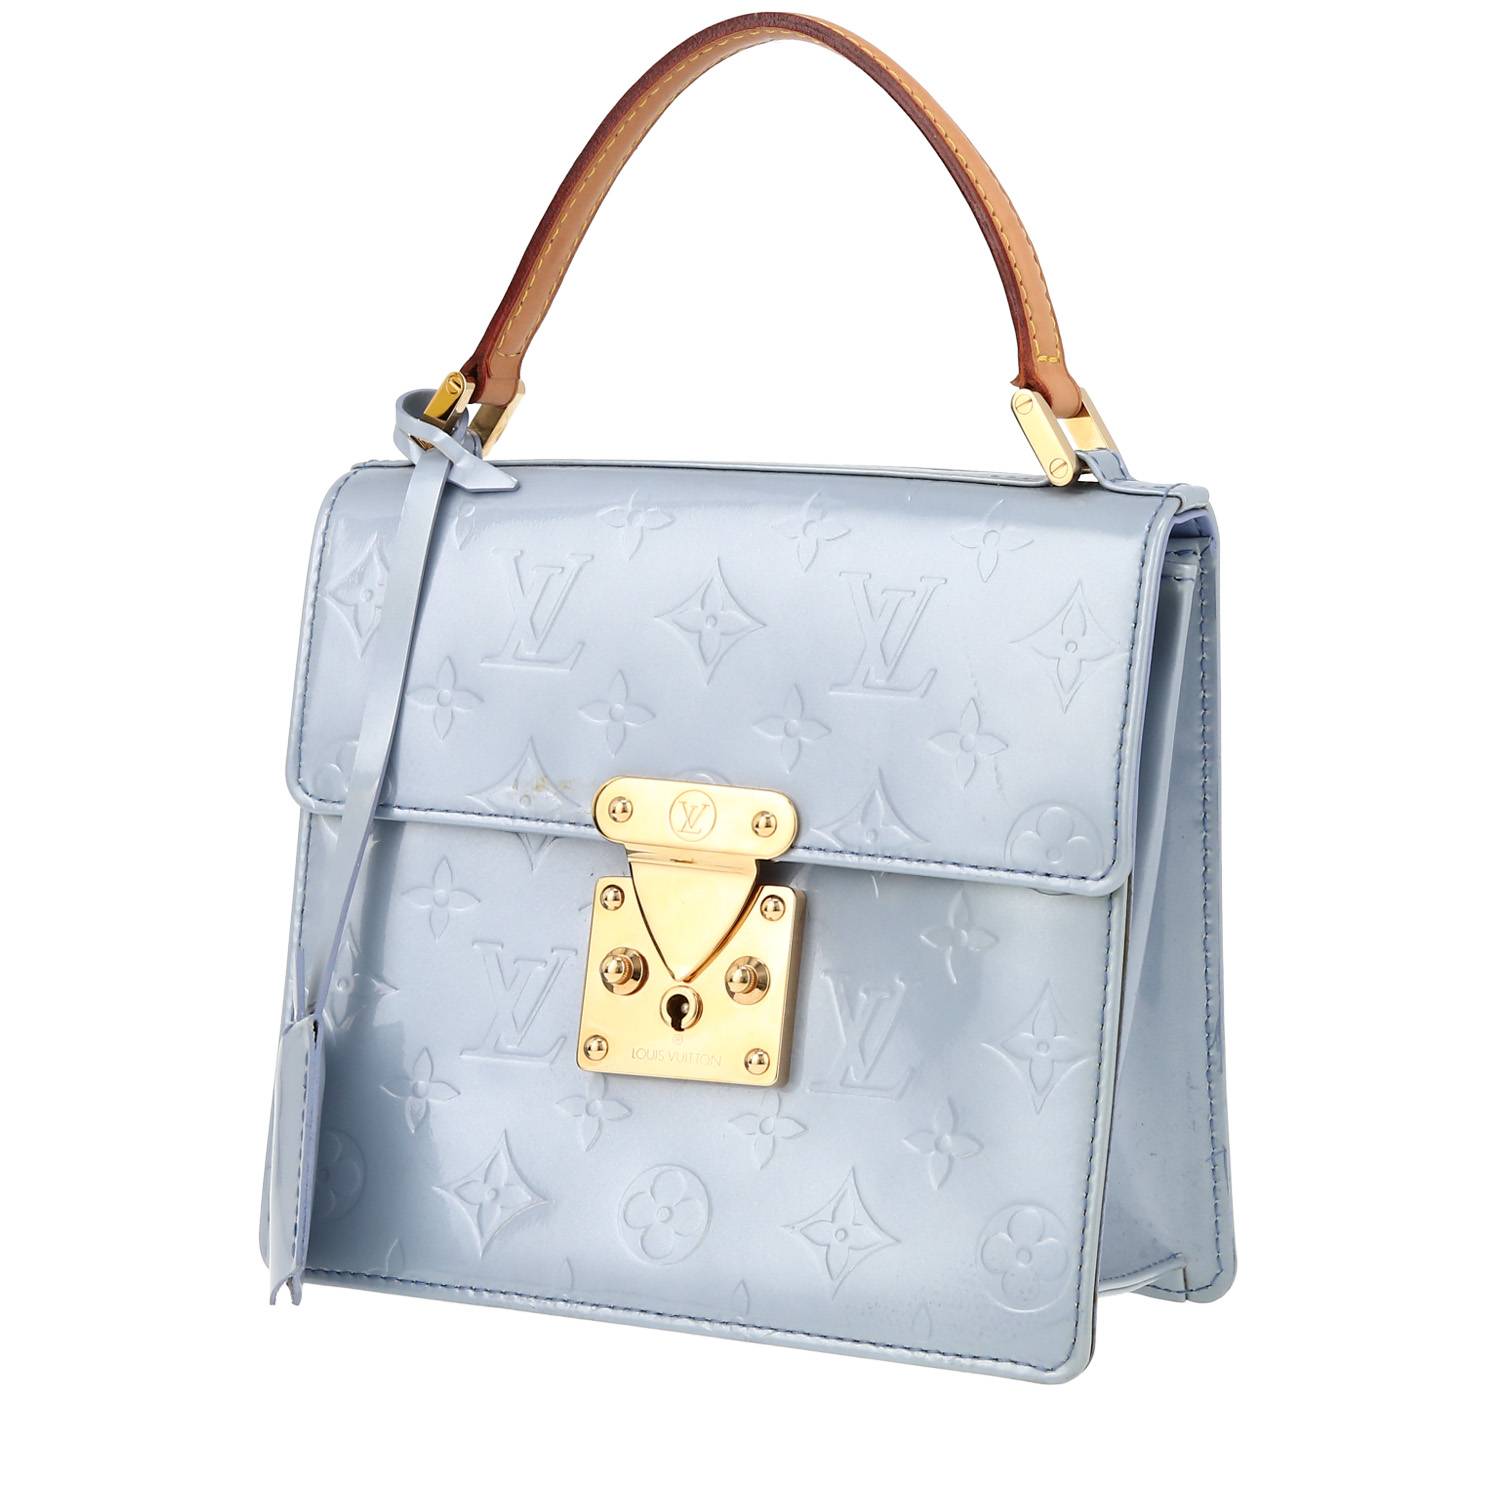 Louis Vuitton, Bags, Louis Vuitton Spring Street Handbag Monogram Vernis  Red